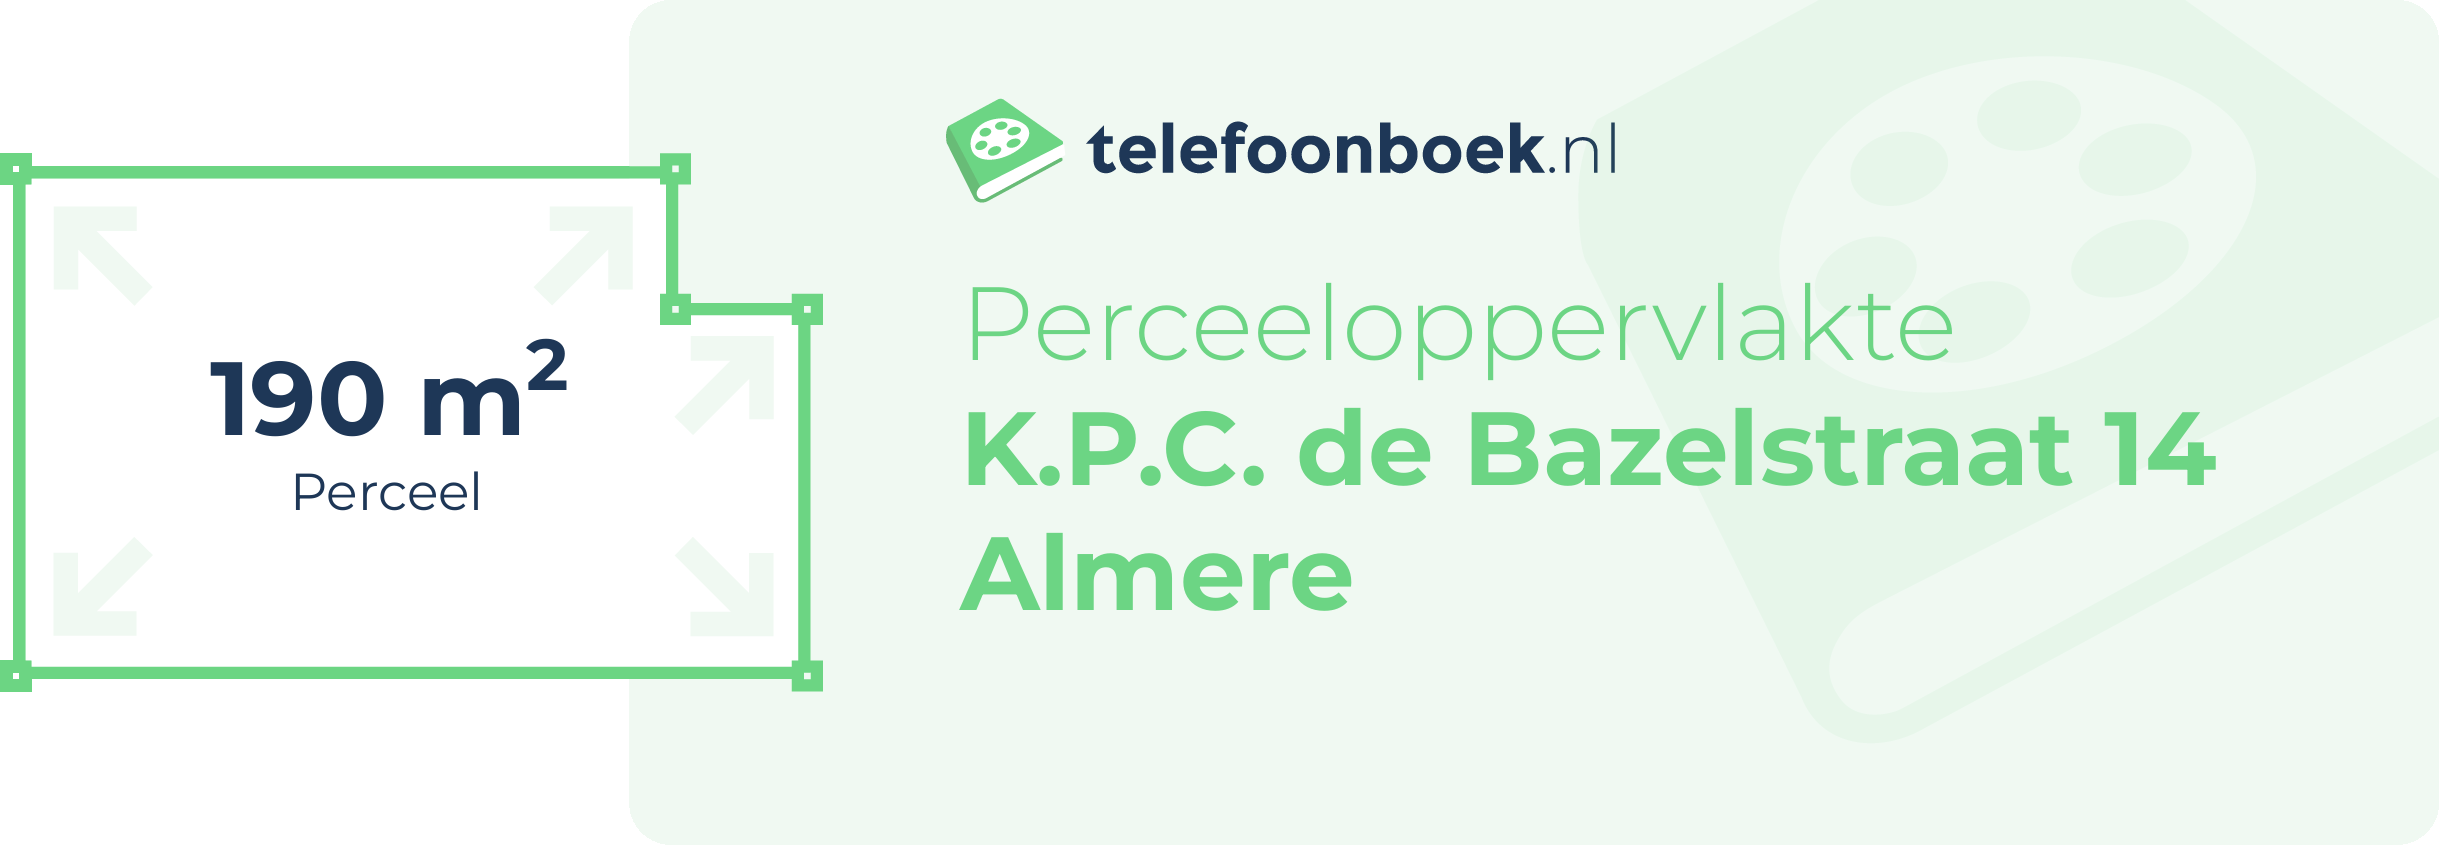 Perceeloppervlakte K.P.C. De Bazelstraat 14 Almere